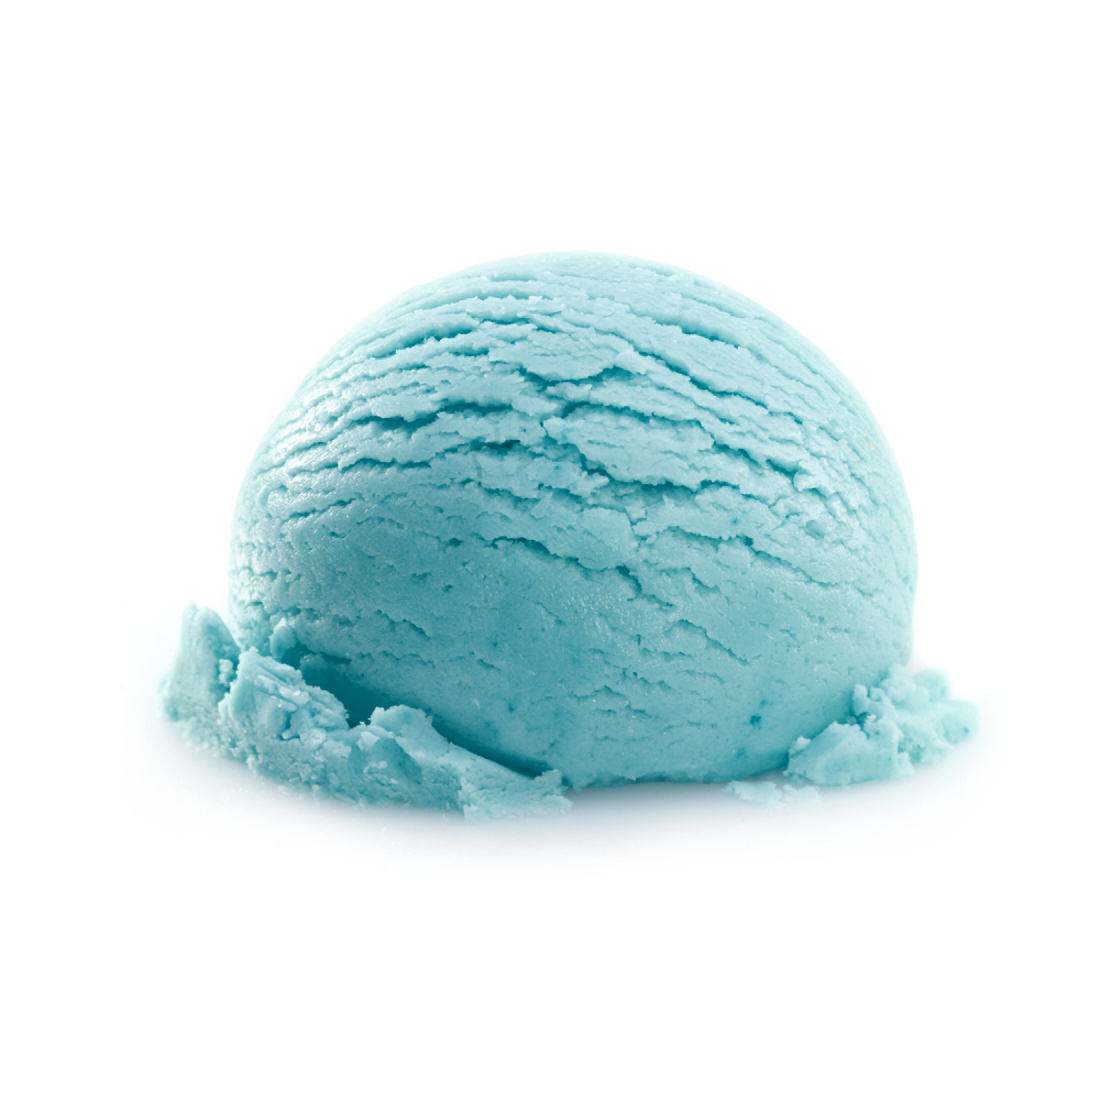 Шарик мороженого синий